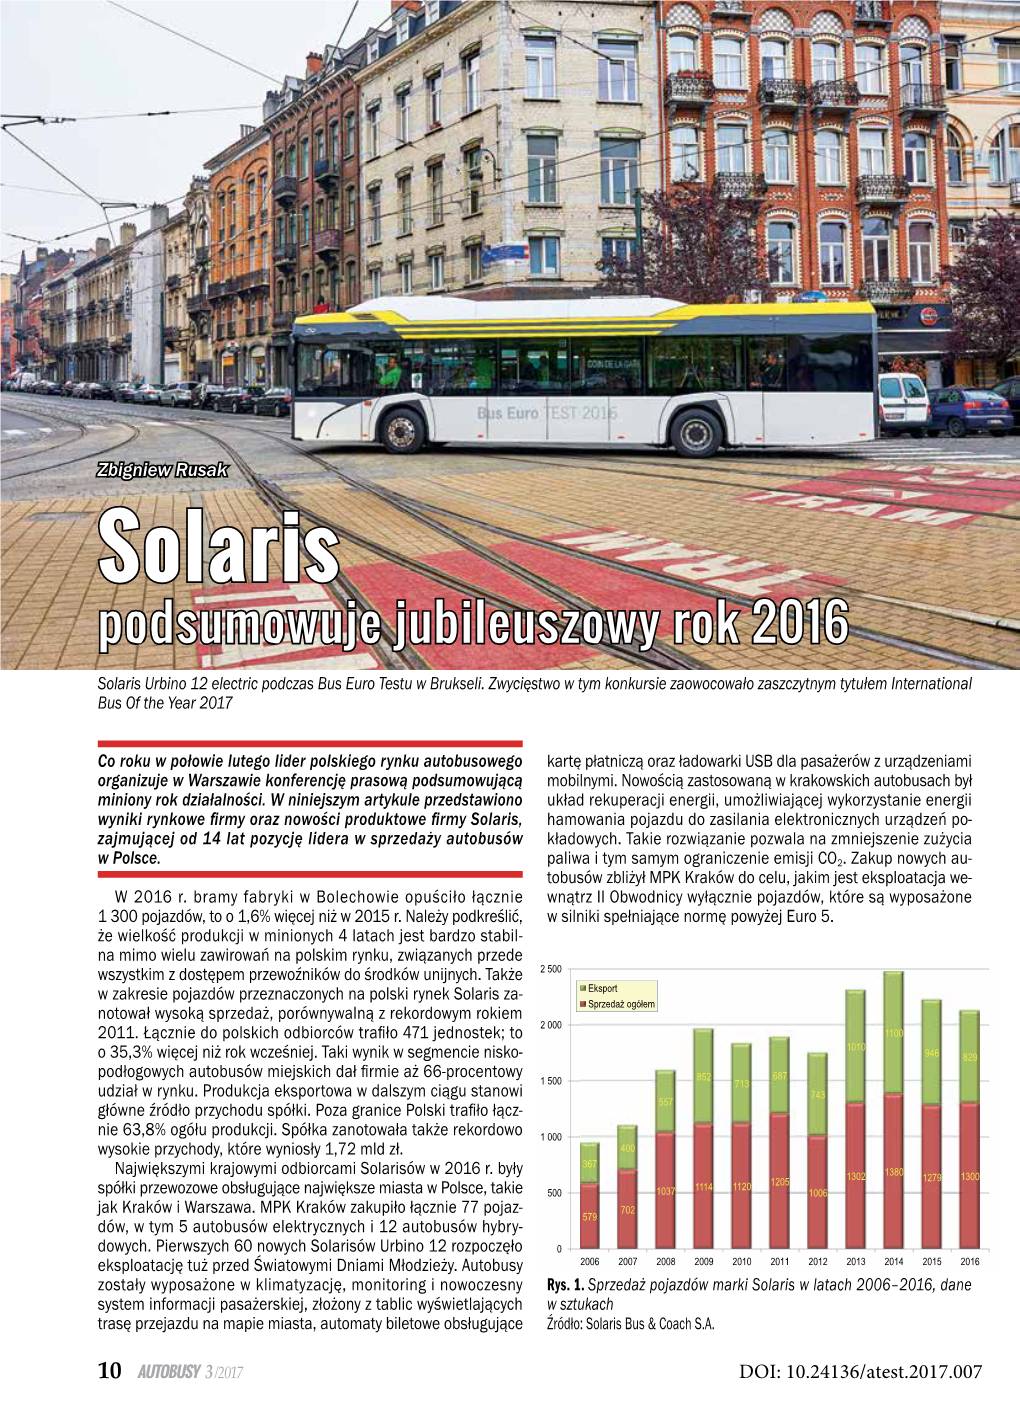 Solaris Podsumowuje Jubileuszowy Rok 2016